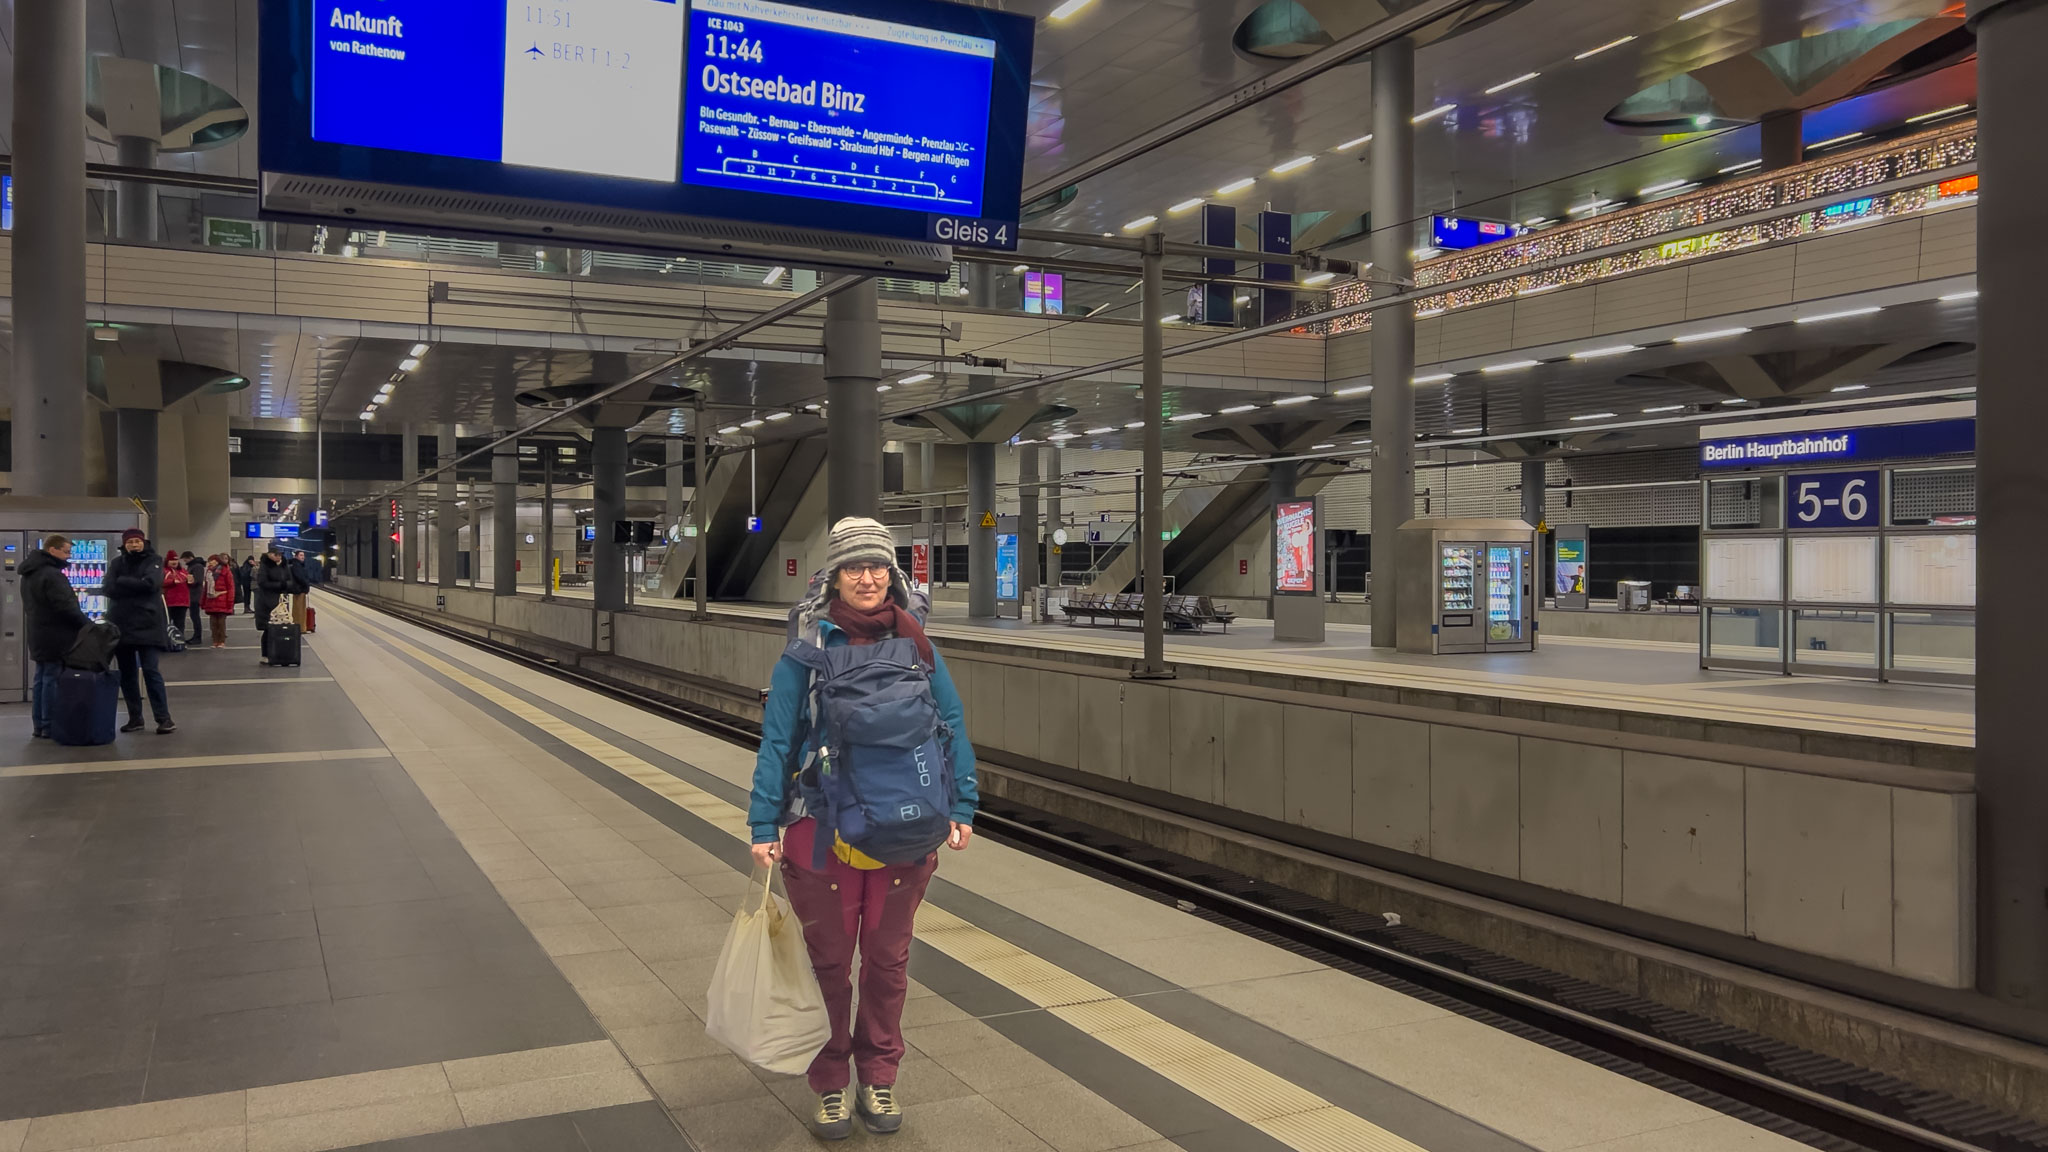 Maria am Berliner Hauptbahnhof unter der Anzeige nach Ostseebad Binz